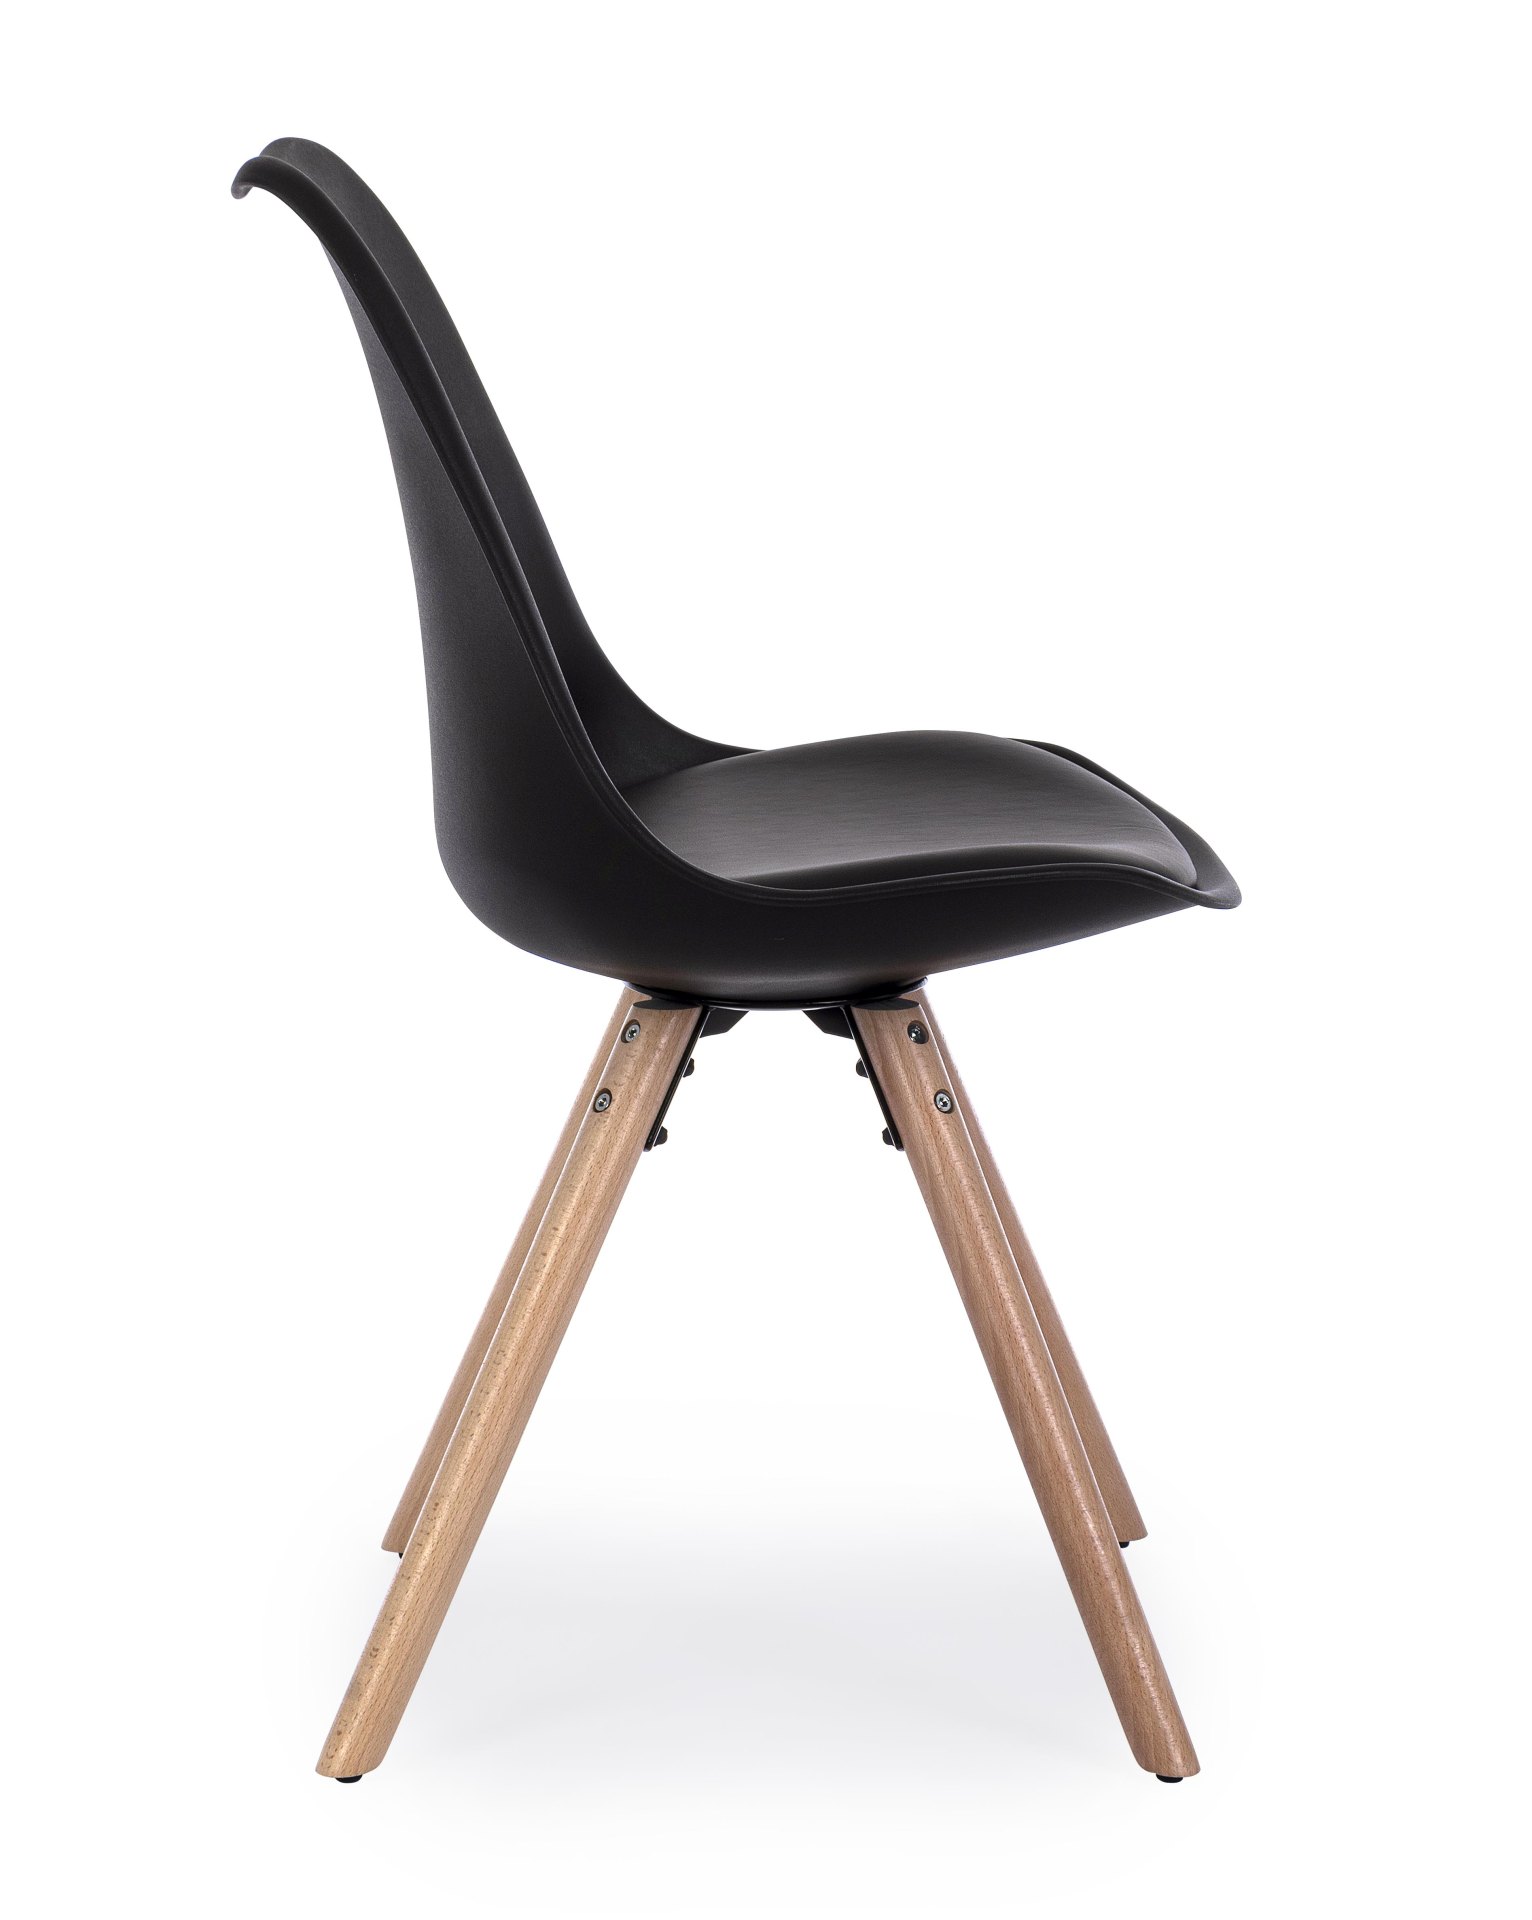 Der Stuhl New Trend überzeugt mit seinem modernem Design. Gefertigt wurde der Stuhl aus Kunststoff, welcher einen schwarzen Farbton besitzt. Das Gestell ist aus Buchenholz. Die Sitzhöhe des Stuhls ist 49 cm